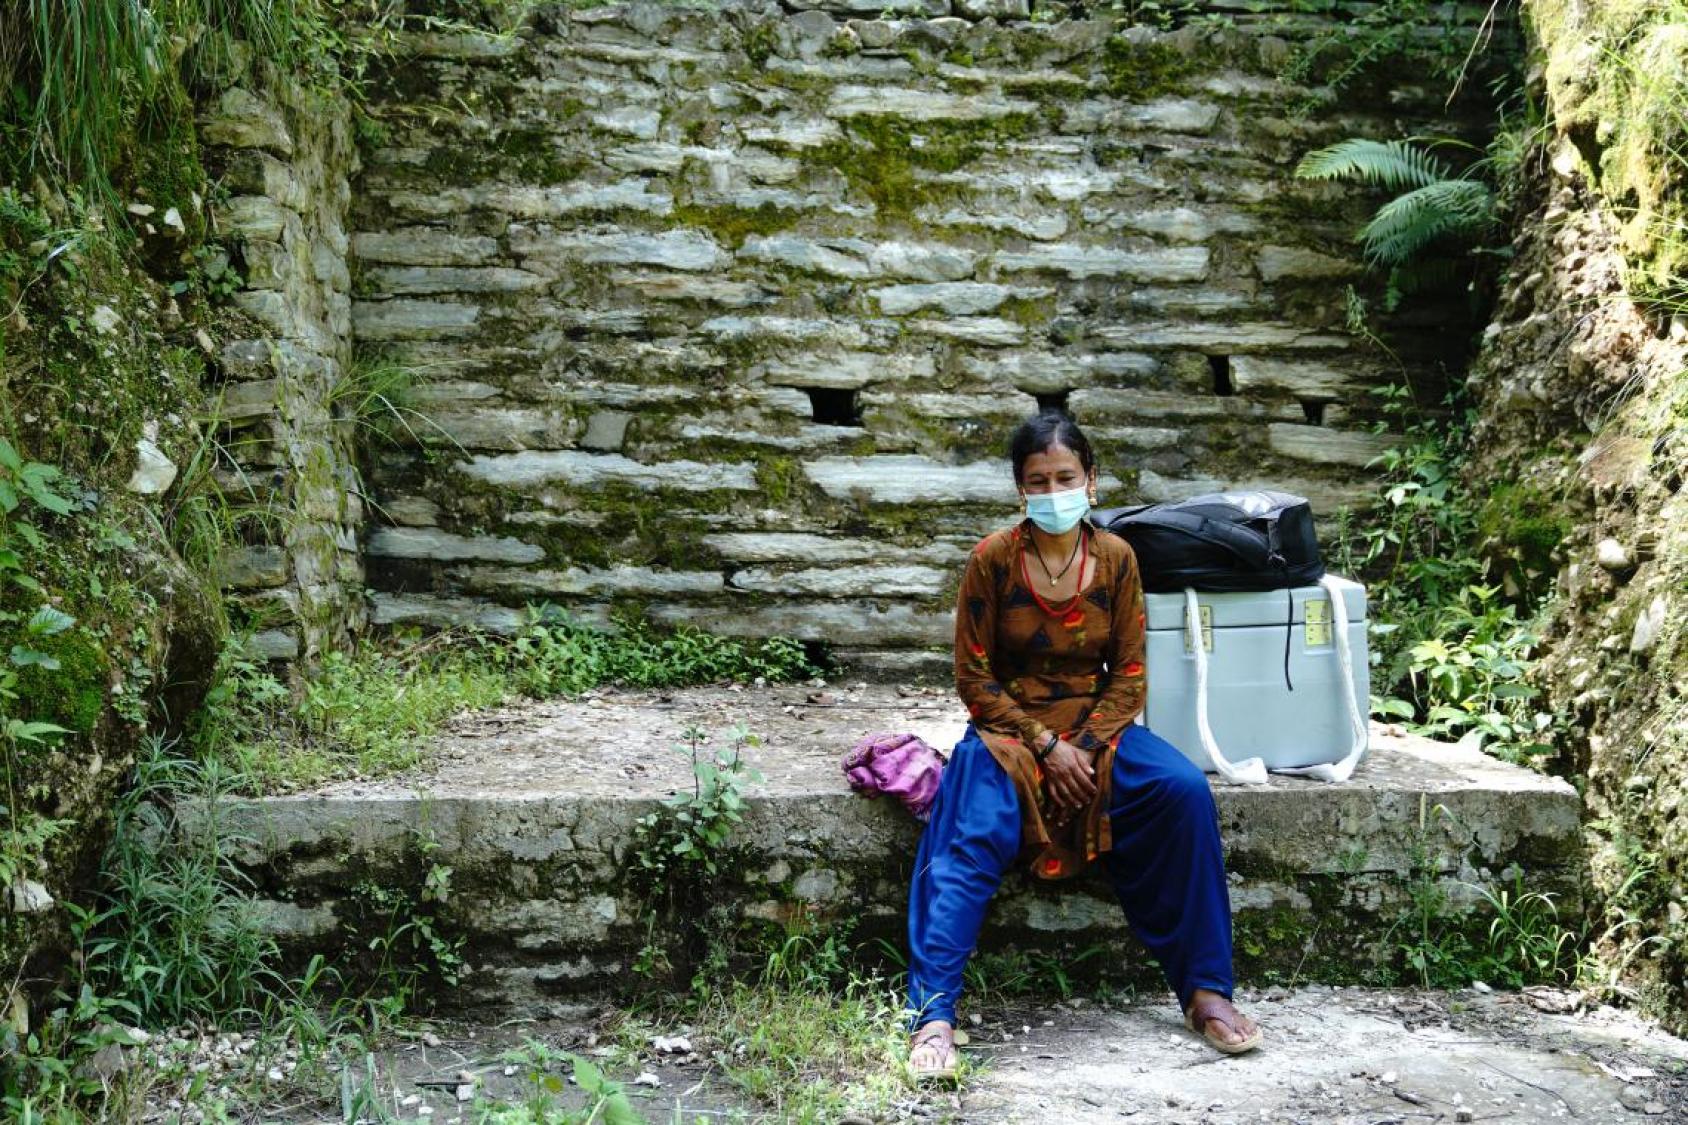 امرأة تجلس بالقرب من جدار صخري وإلى جانبها صندوق كبير.